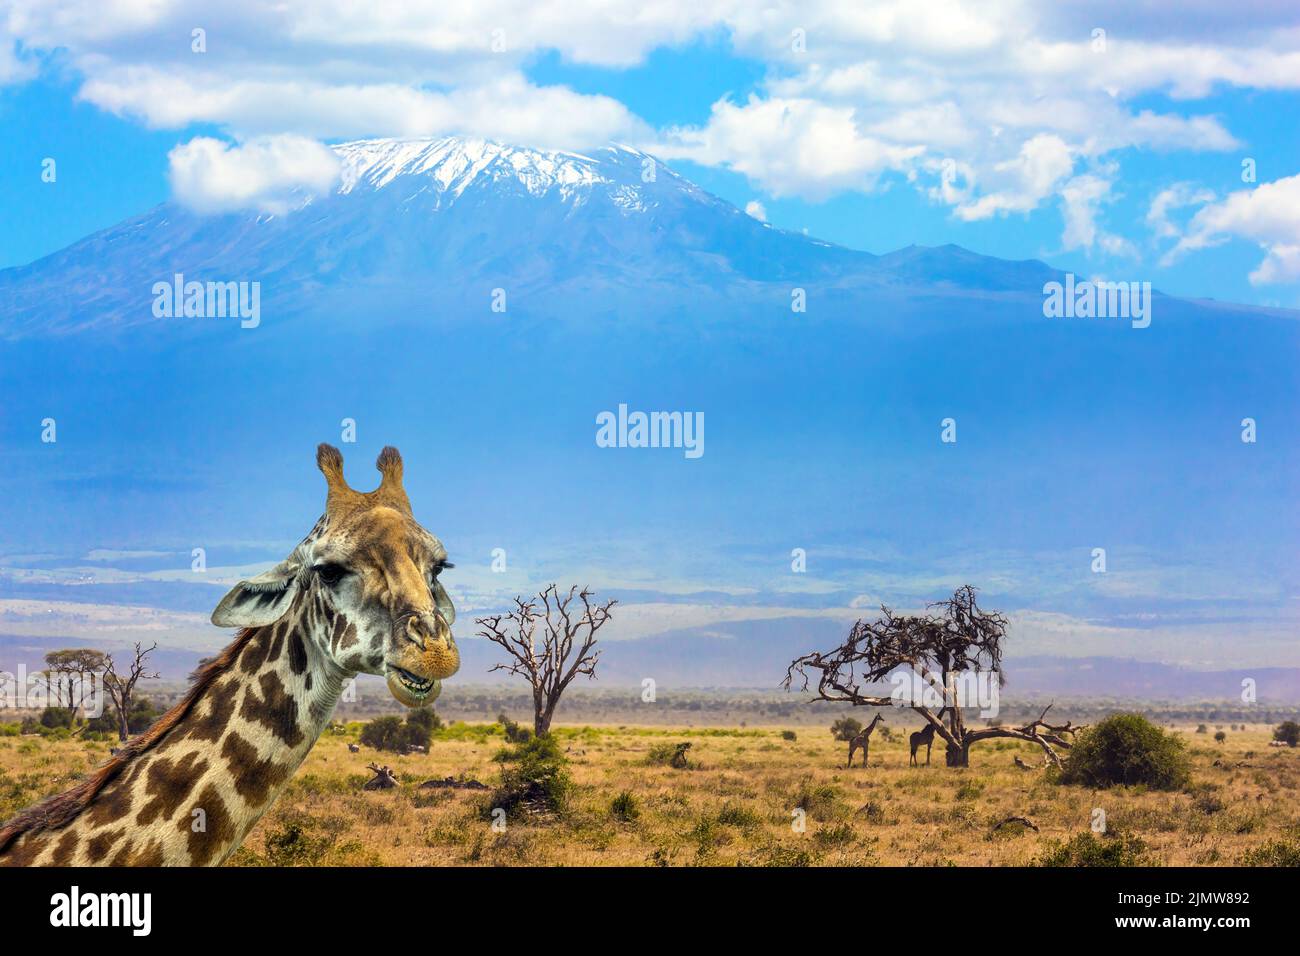 Funny giraffe at the foot of Kilimanjaro Stock Photo